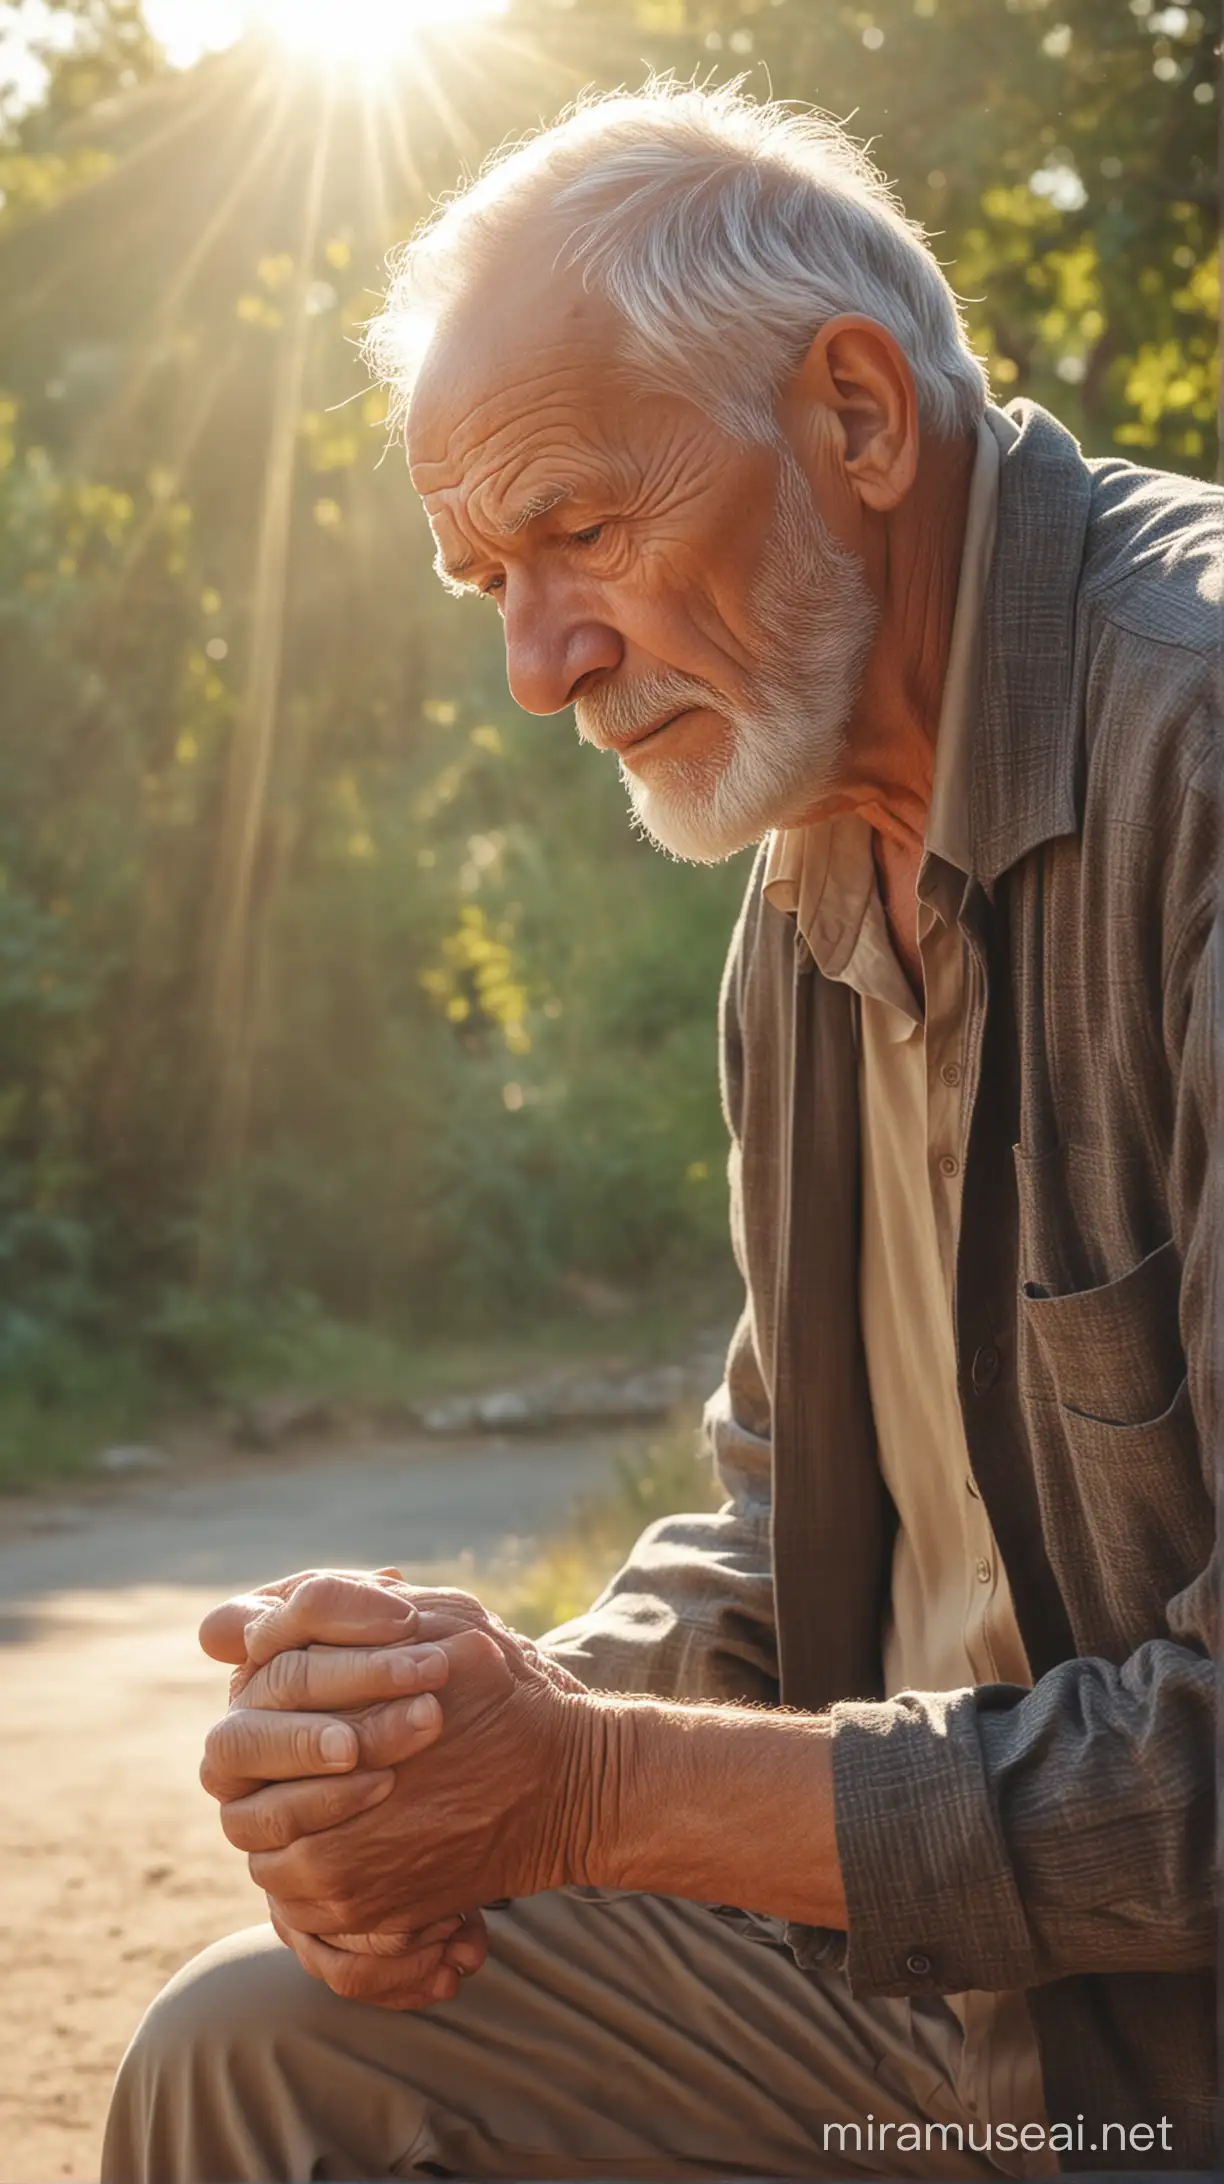 Elderly Man Experiencing Fatigue in Serene Morning Light